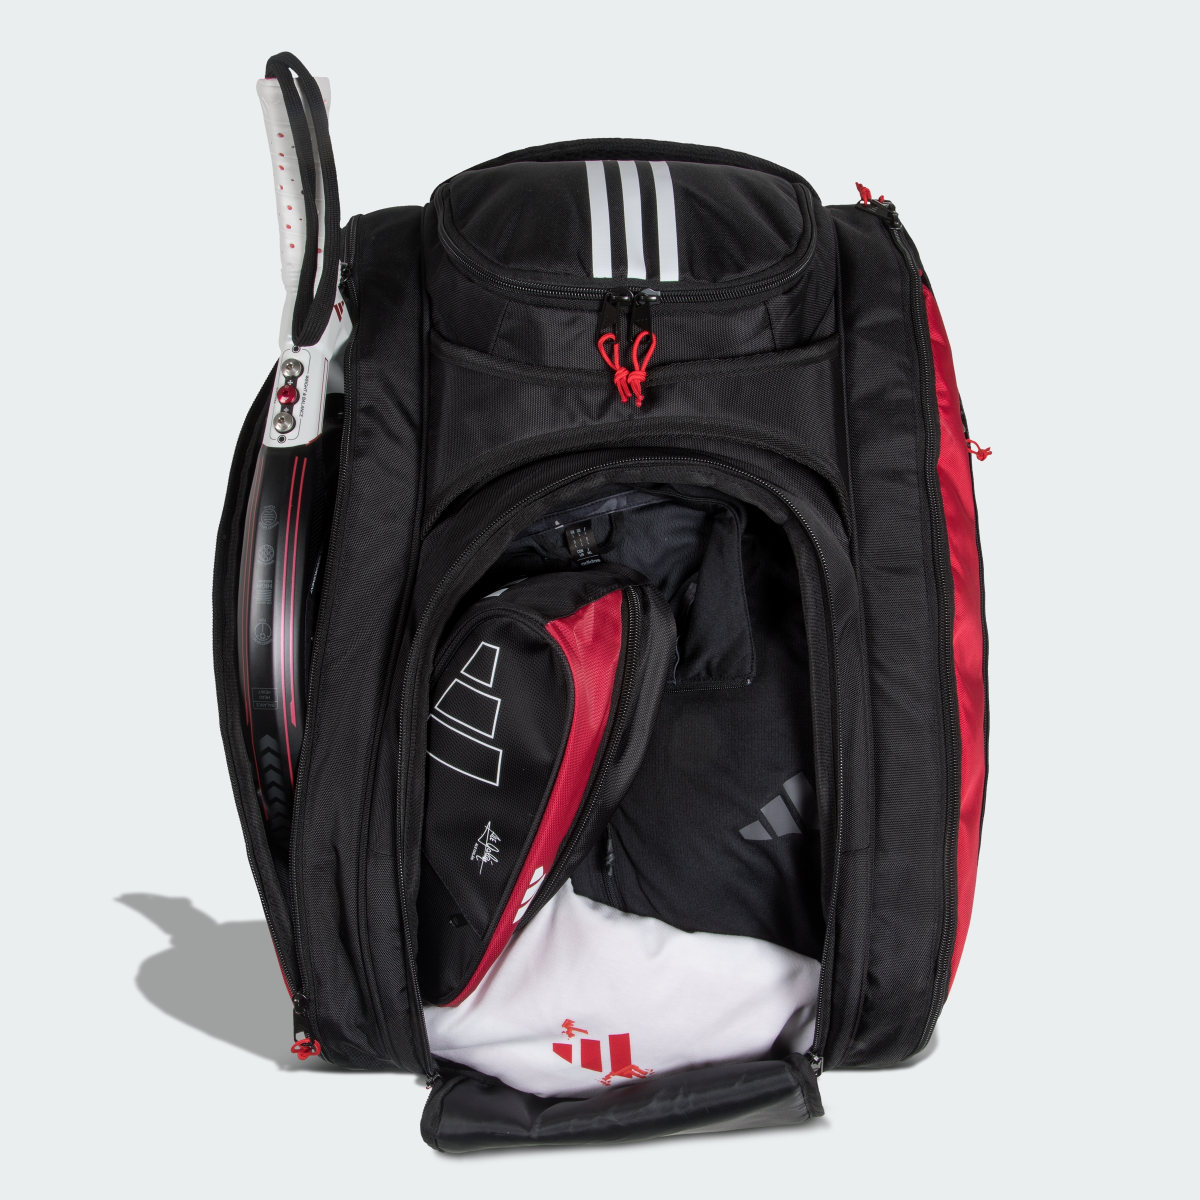 Adidas Racket Bag Multi-Game 3.3 Black. 4